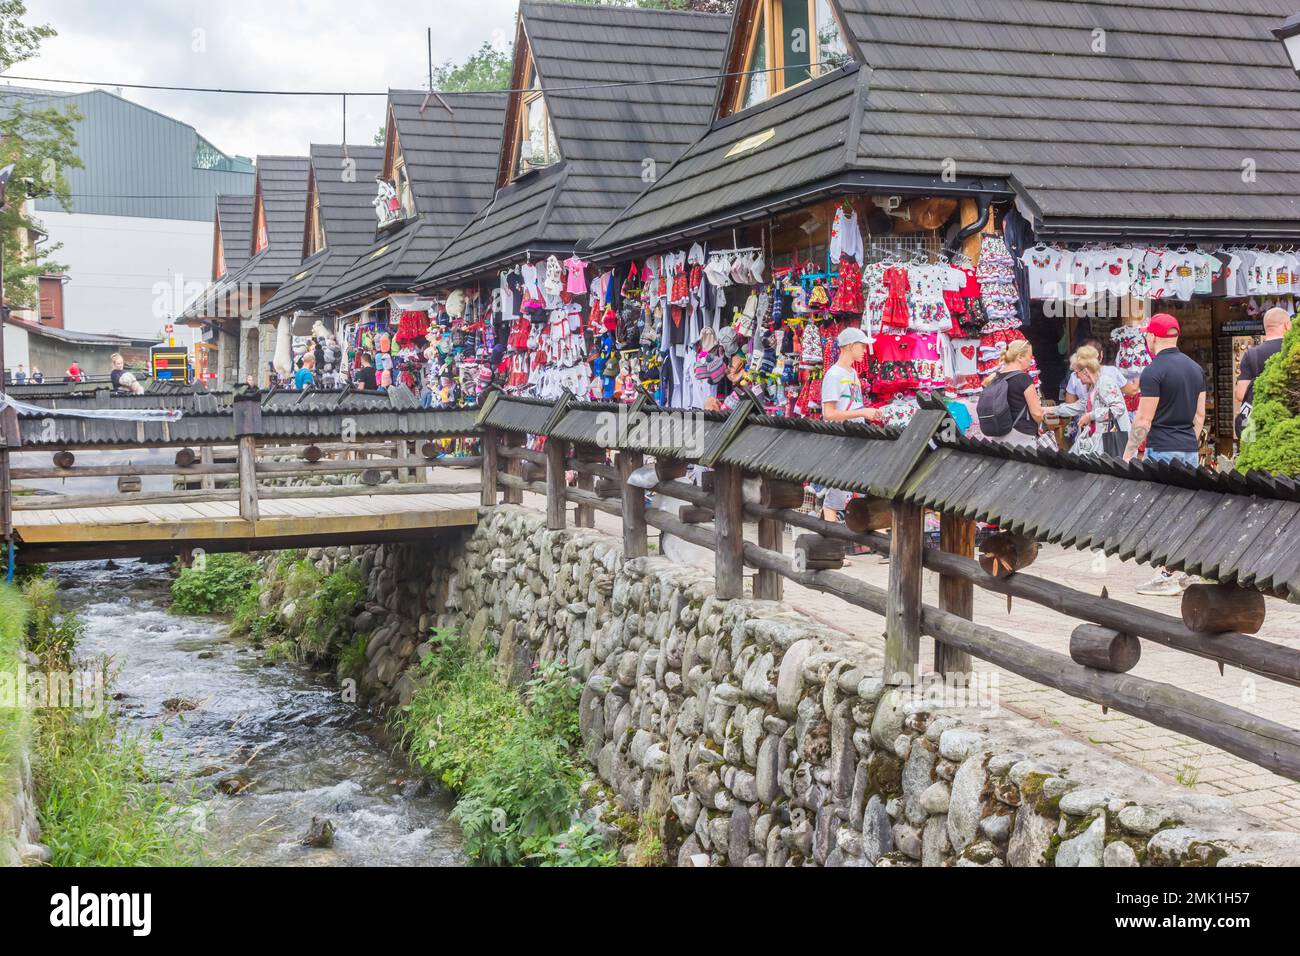 Touristes marchant le long du ruisseau et des boutiques de souvenirs à Zakopane, Pologne Banque D'Images